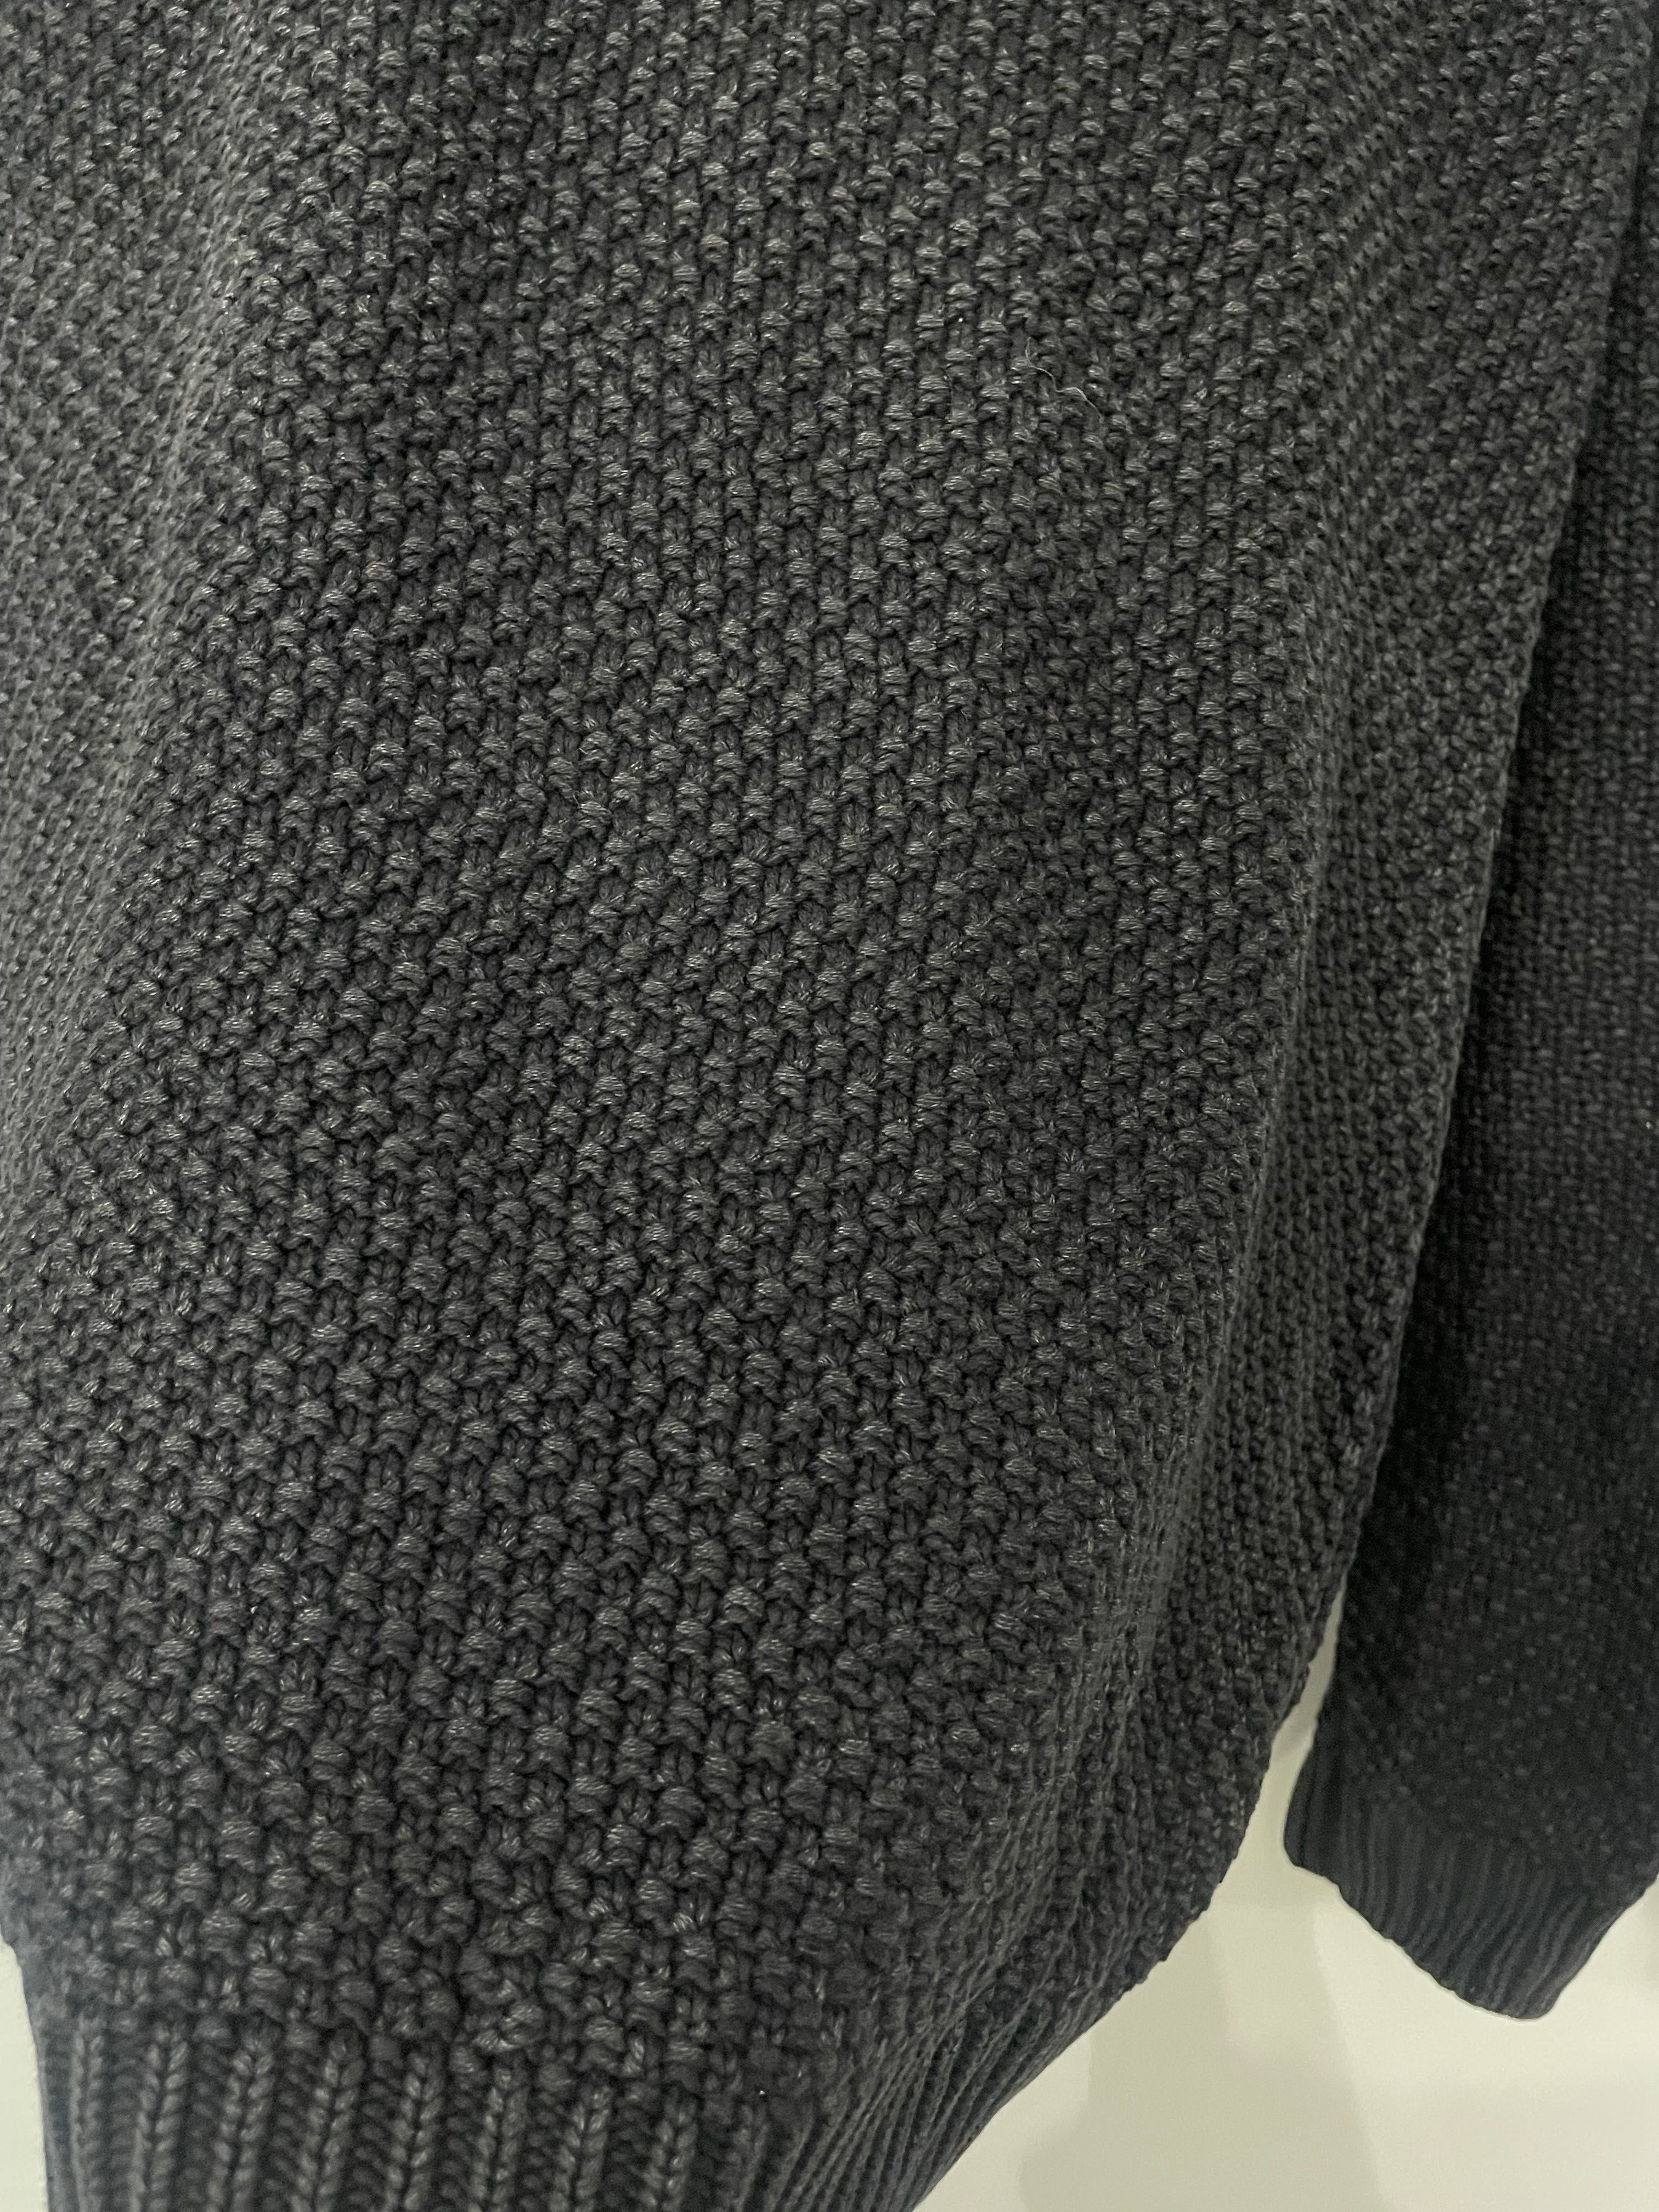 Męski czarny sweter bawełniany, XL.